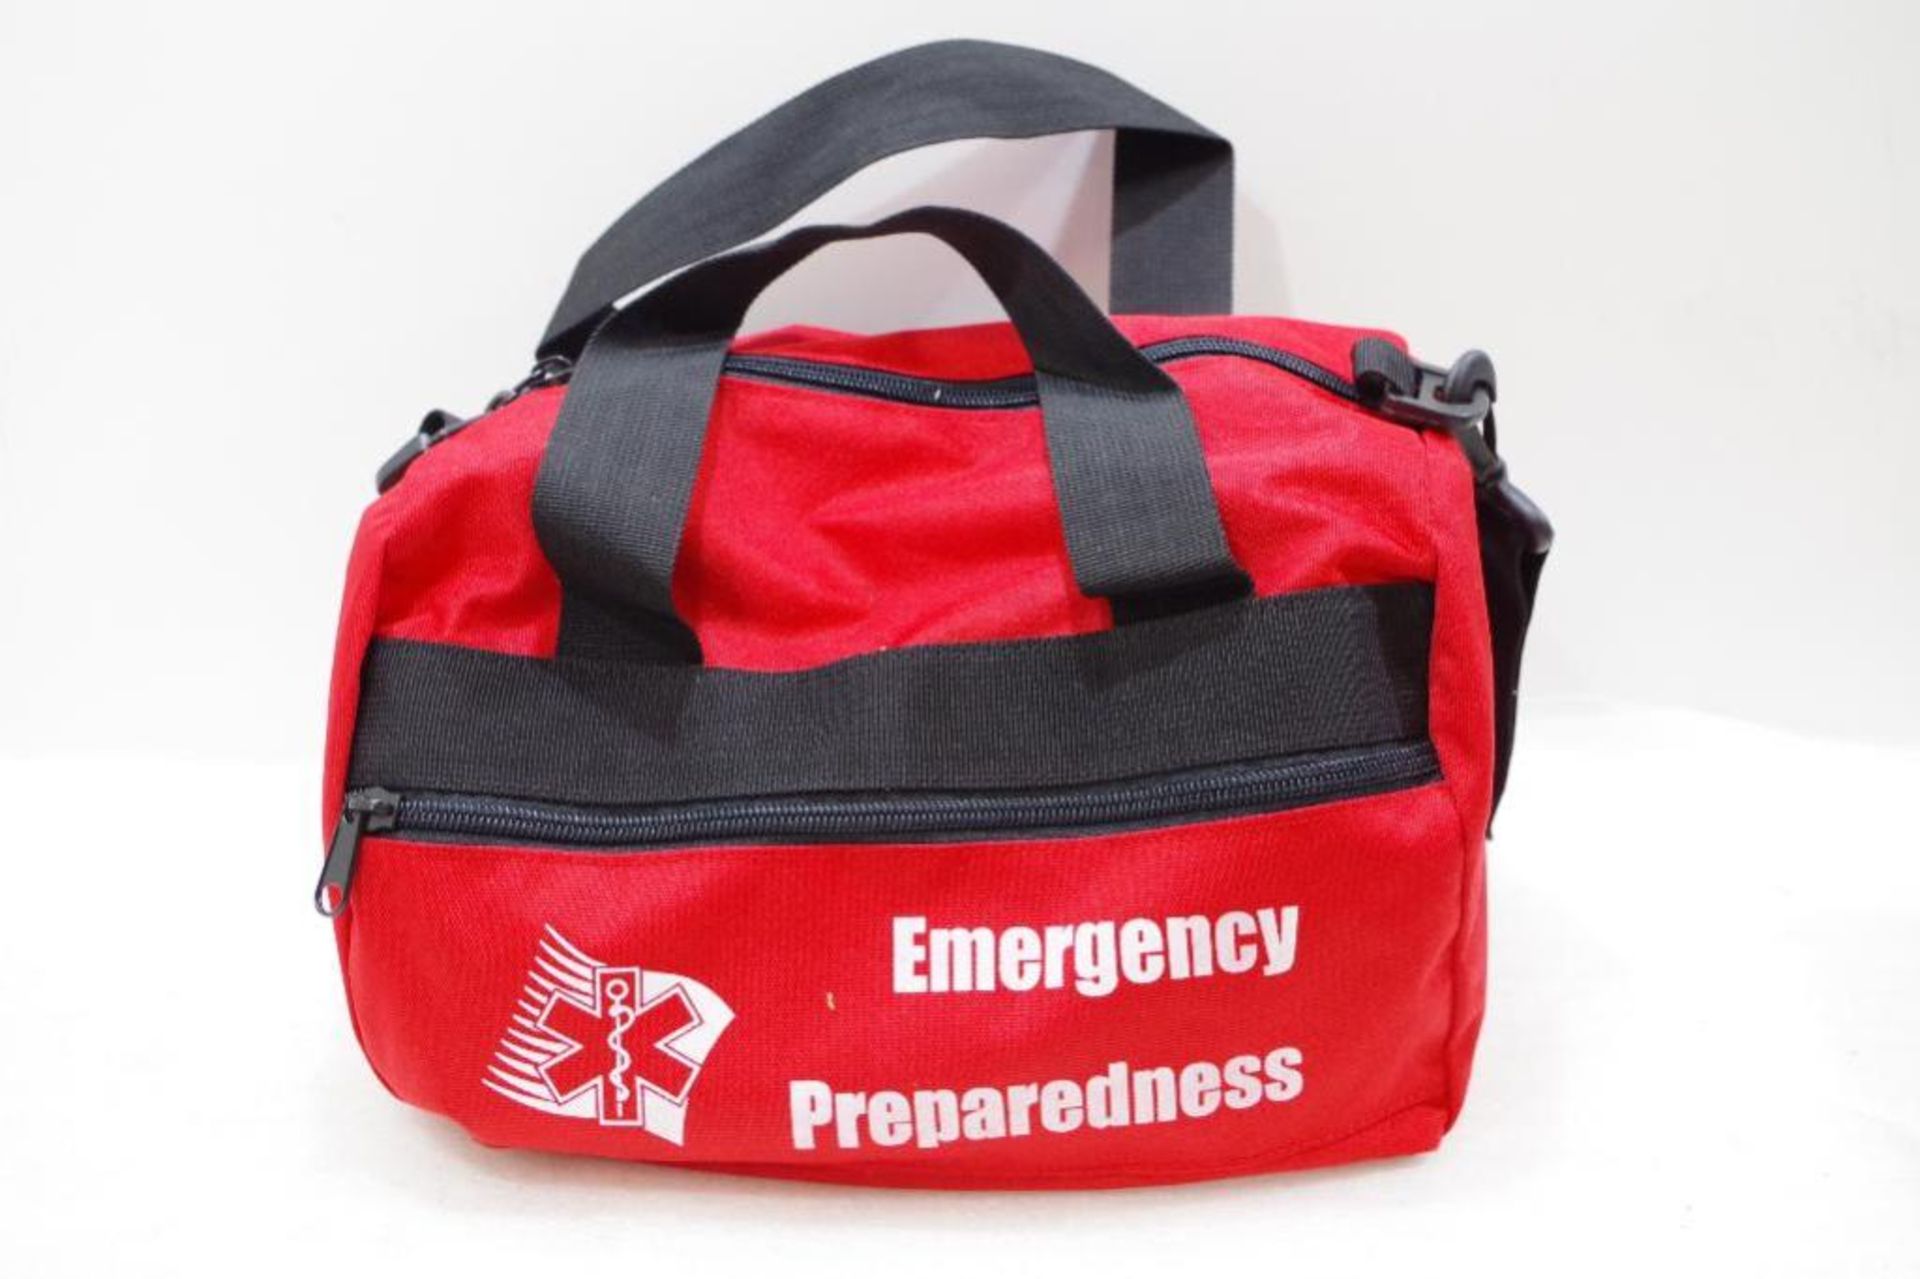 NEW Emergency Preparedness Kit/Bag - Image 3 of 7